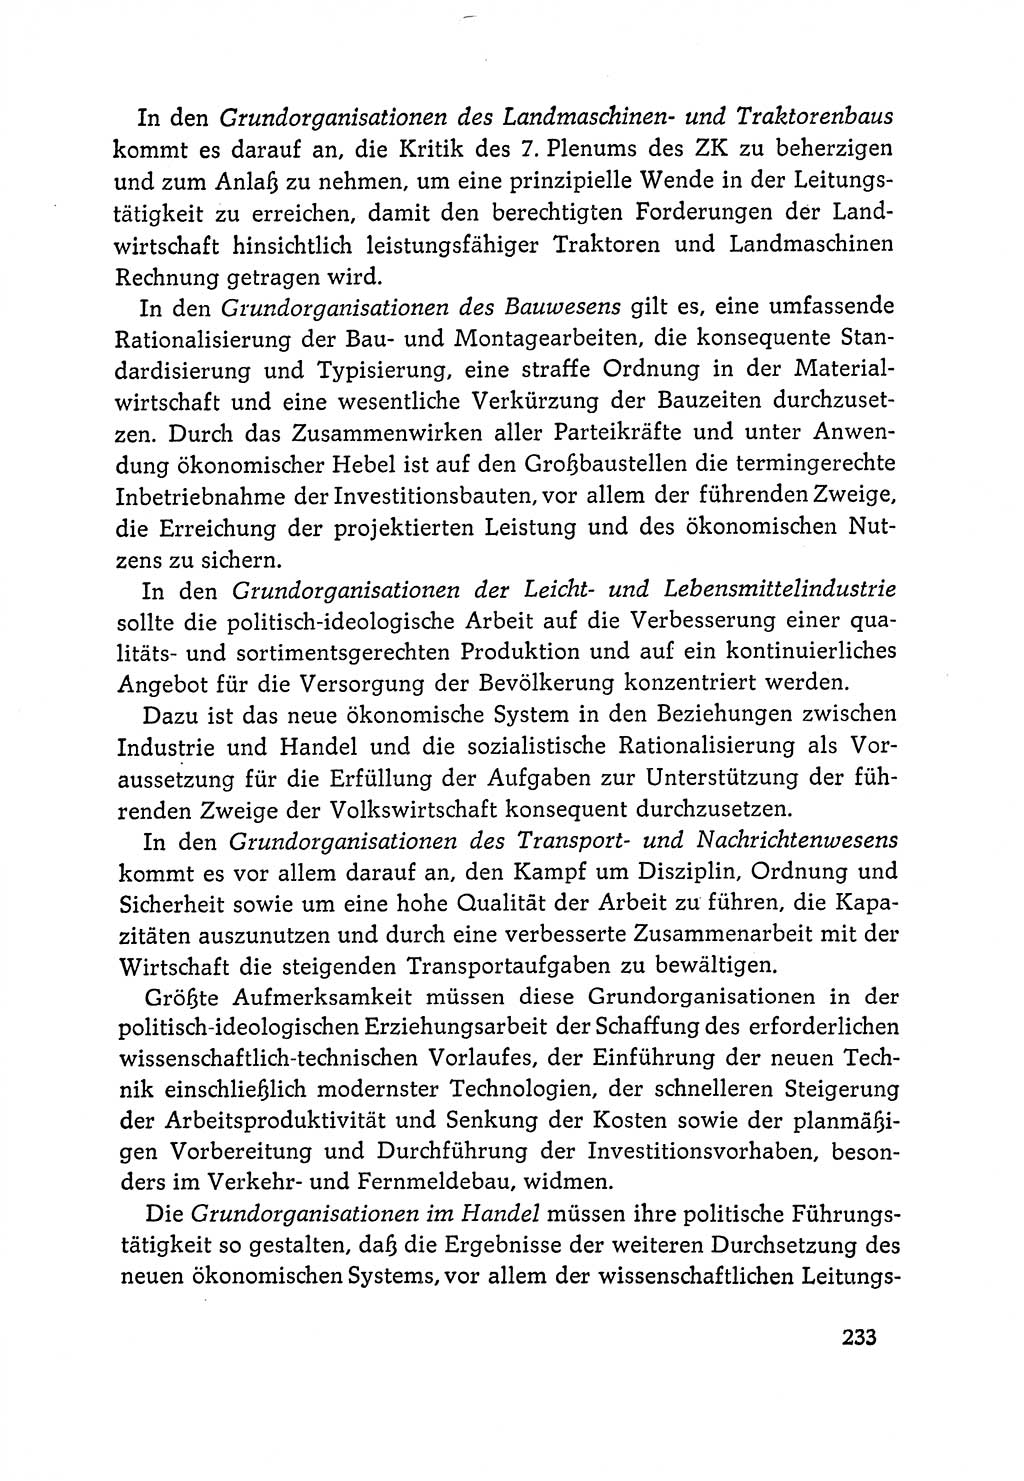 Dokumente der Sozialistischen Einheitspartei Deutschlands (SED) [Deutsche Demokratische Republik (DDR)] 1964-1965, Seite 233 (Dok. SED DDR 1964-1965, S. 233)